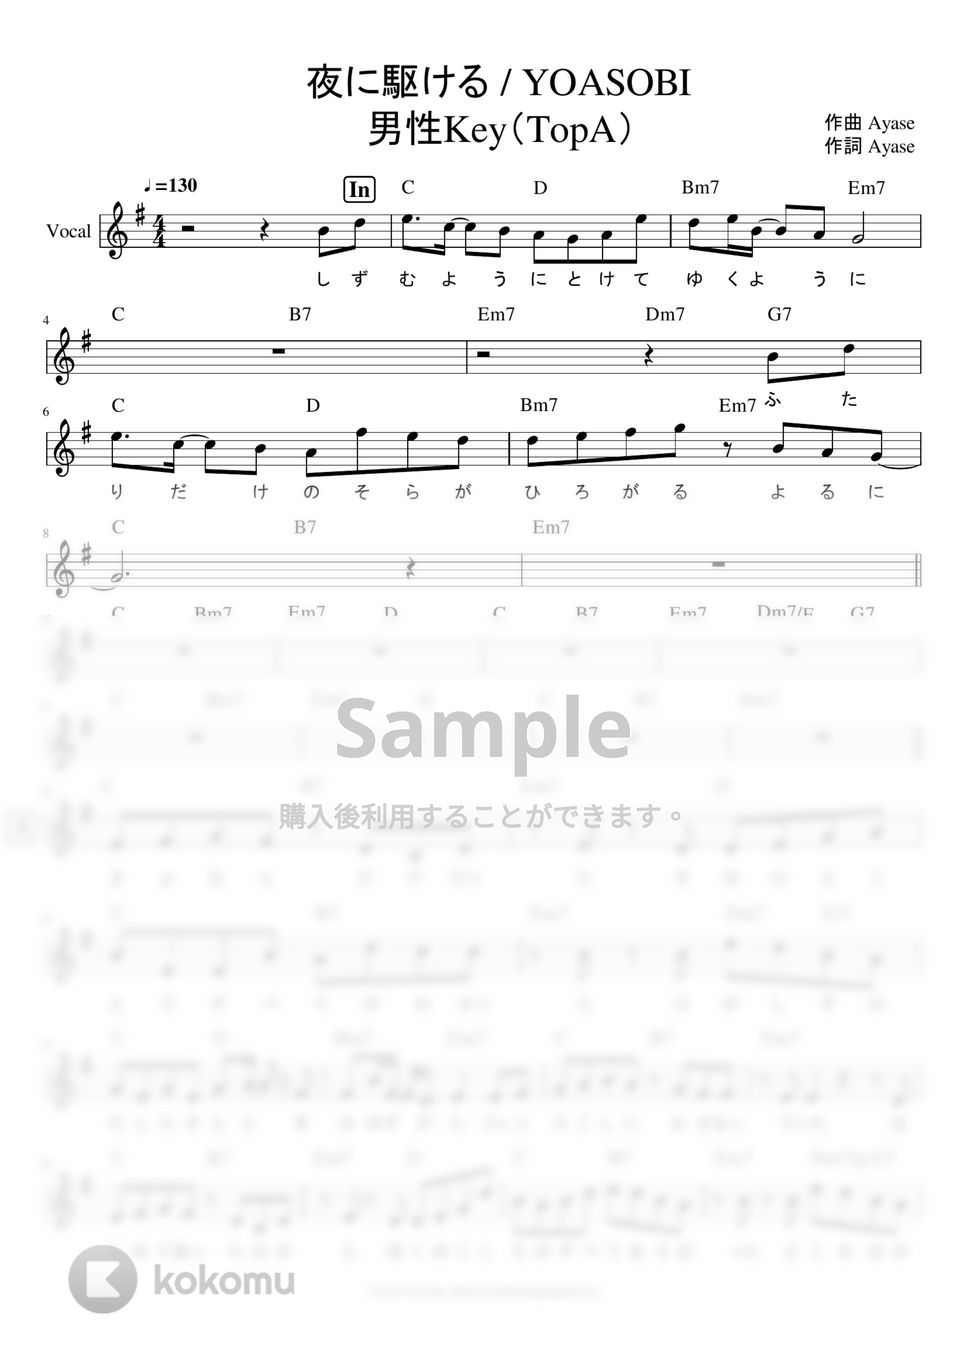 YOASOBI - ※Sample 「夜に駆ける」 リードシート※男声アレンジ (男声キーに編曲したサイズ譜です。) by ましまし